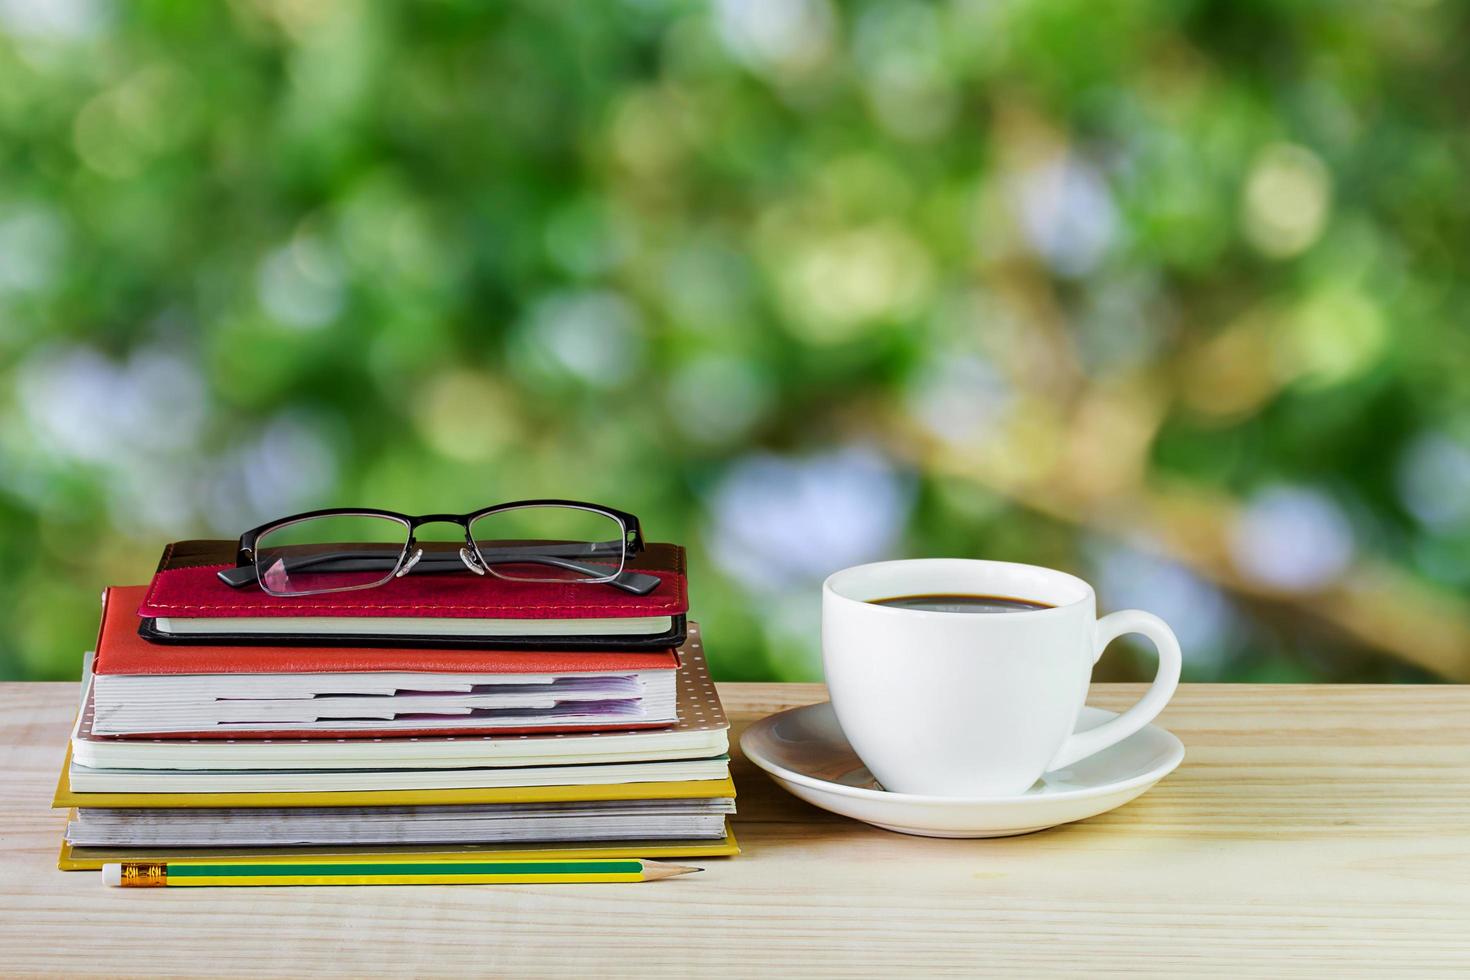 kaffekopp, glas och hög bok på träbord med oskärpa bakgrund foto